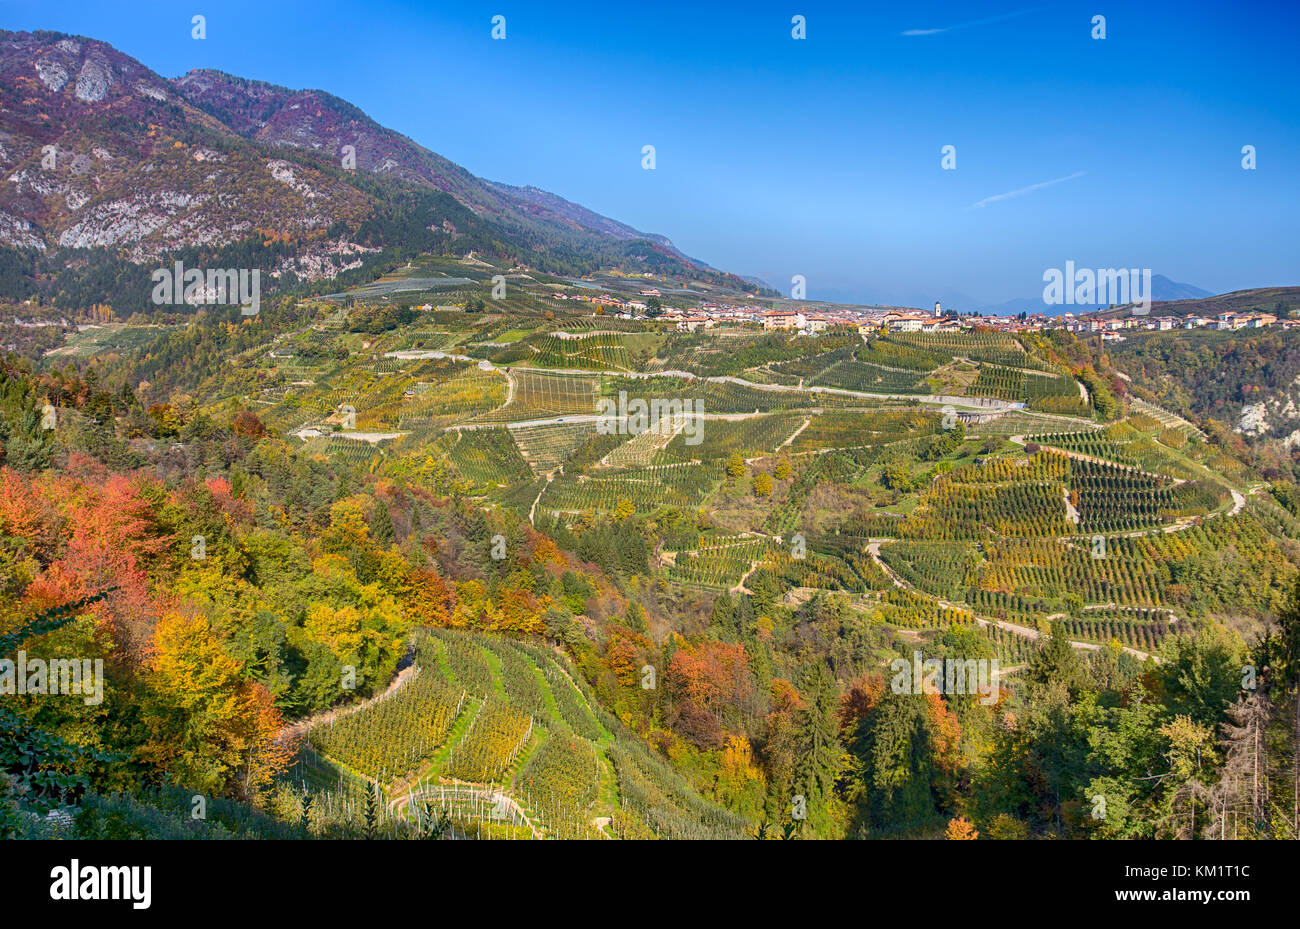 Vista autunnale del comune di tuenno sullo sfondo della val di non, in trentino alto adige in provincia di Trento, Italia Foto Stock